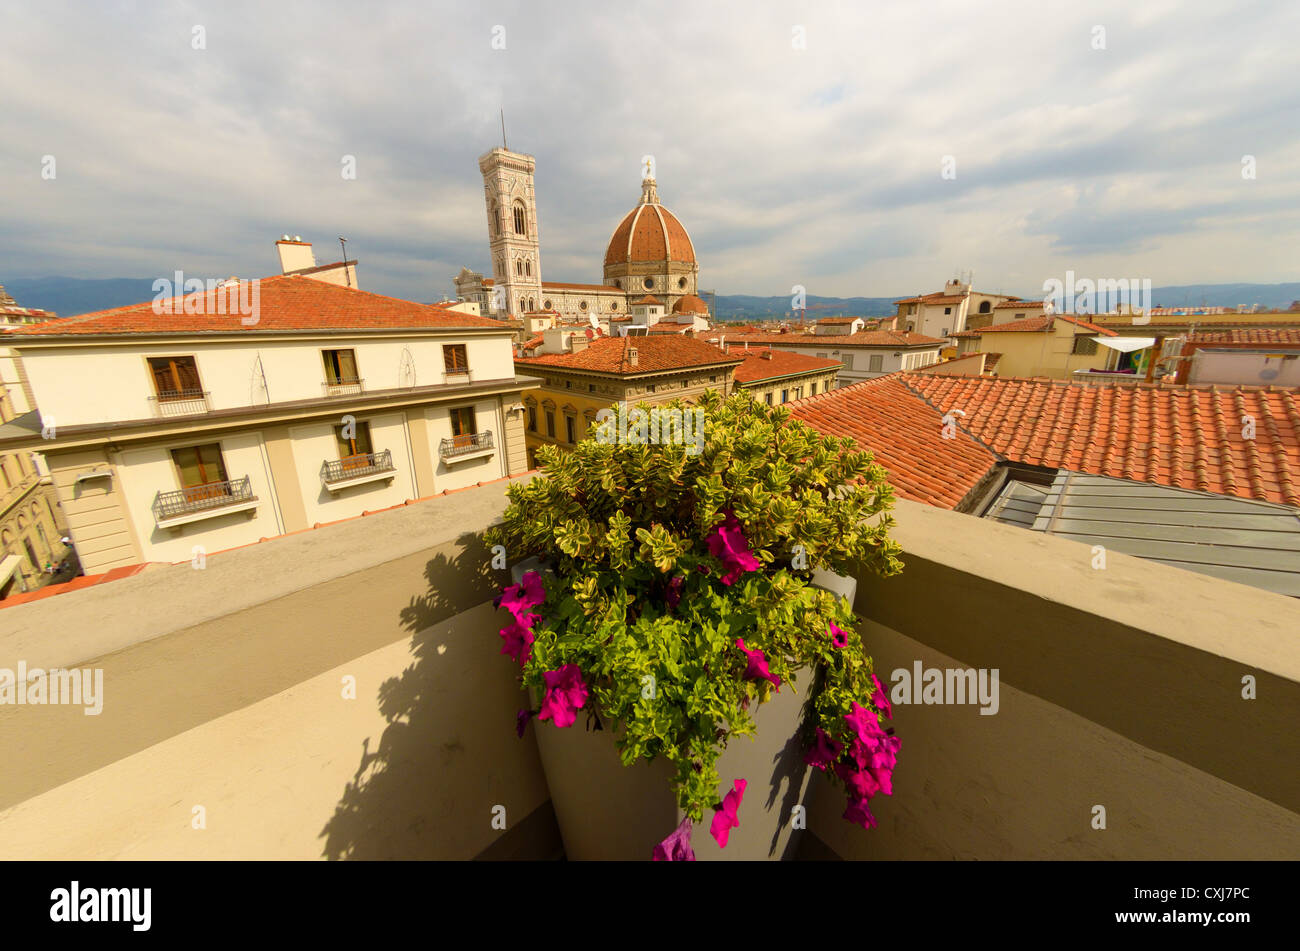 El Campanile y la cúpula de la Catedral de Florencia (Firenze), visto a través de los tejados de la ciudad. Foto de stock